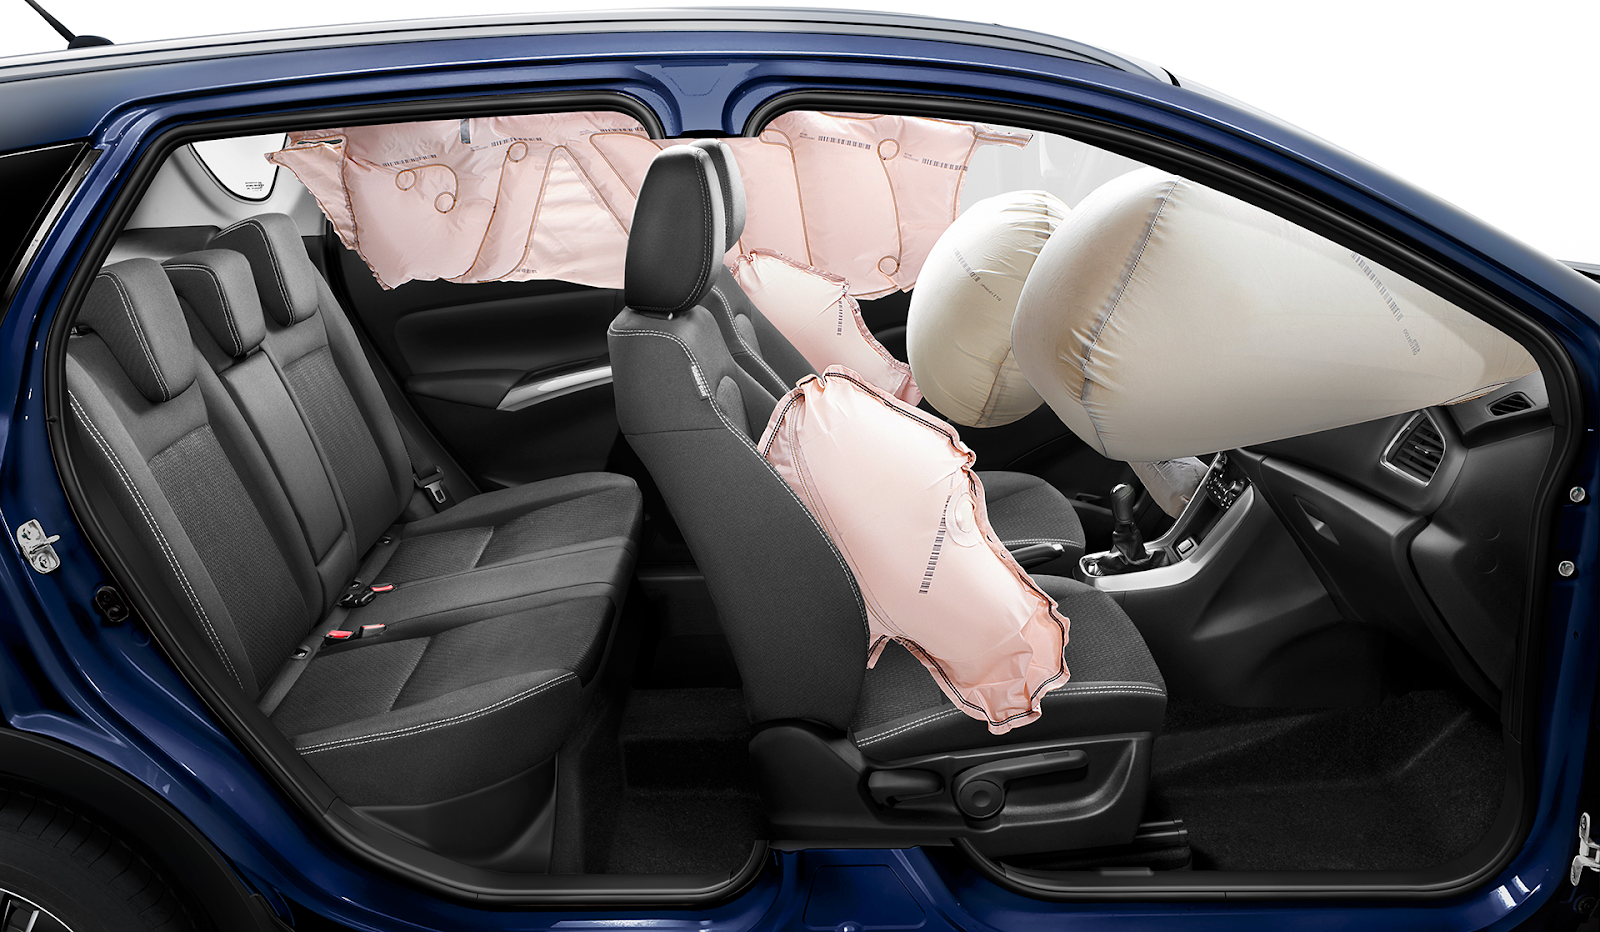 Suzuki S Cross Safety Features: